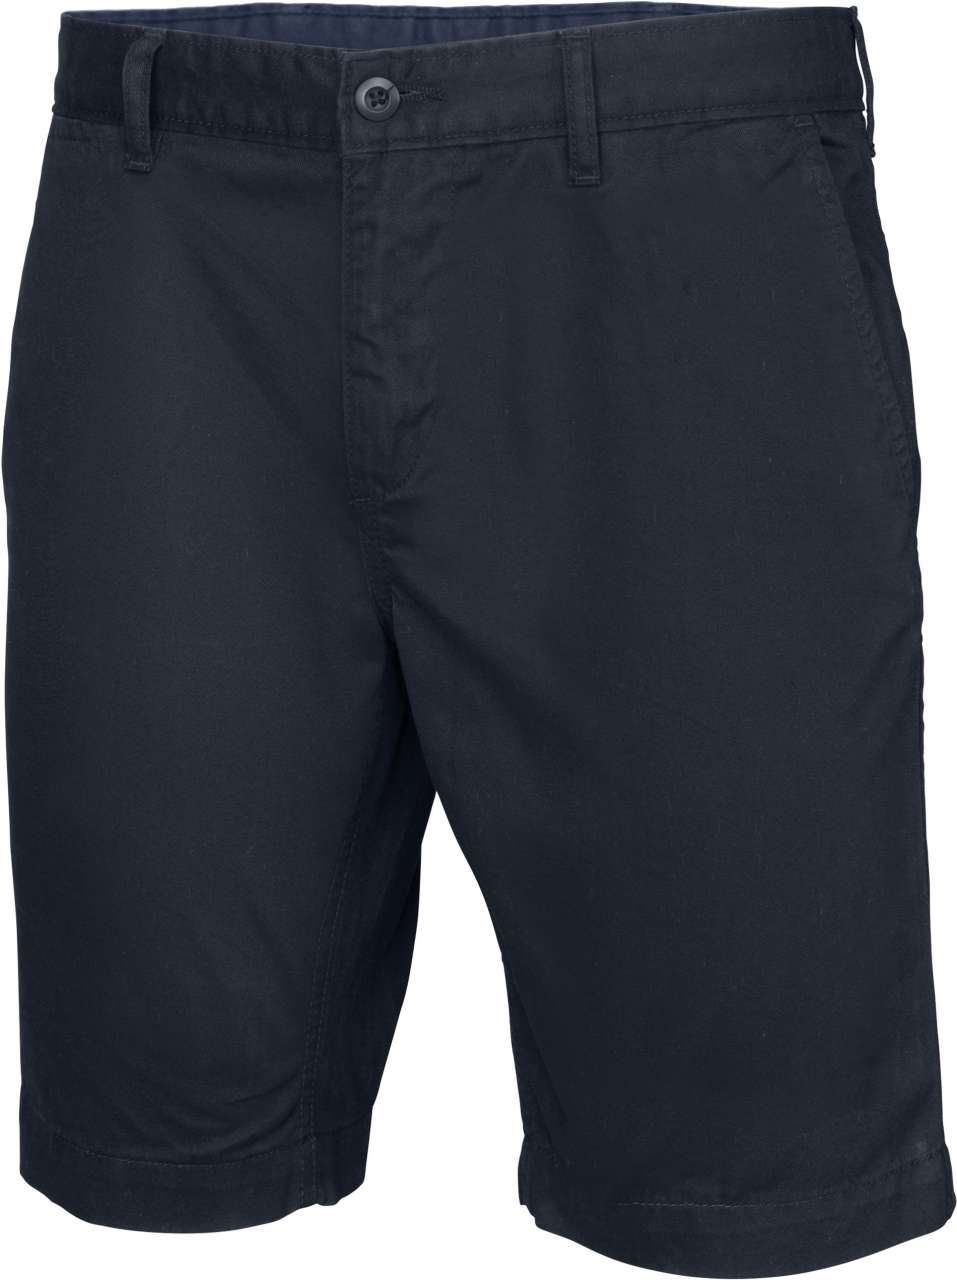 Pantaloni scurti pentru barbati confectionati din bumbac, cu doua buzunare laterale si doua la spate B522